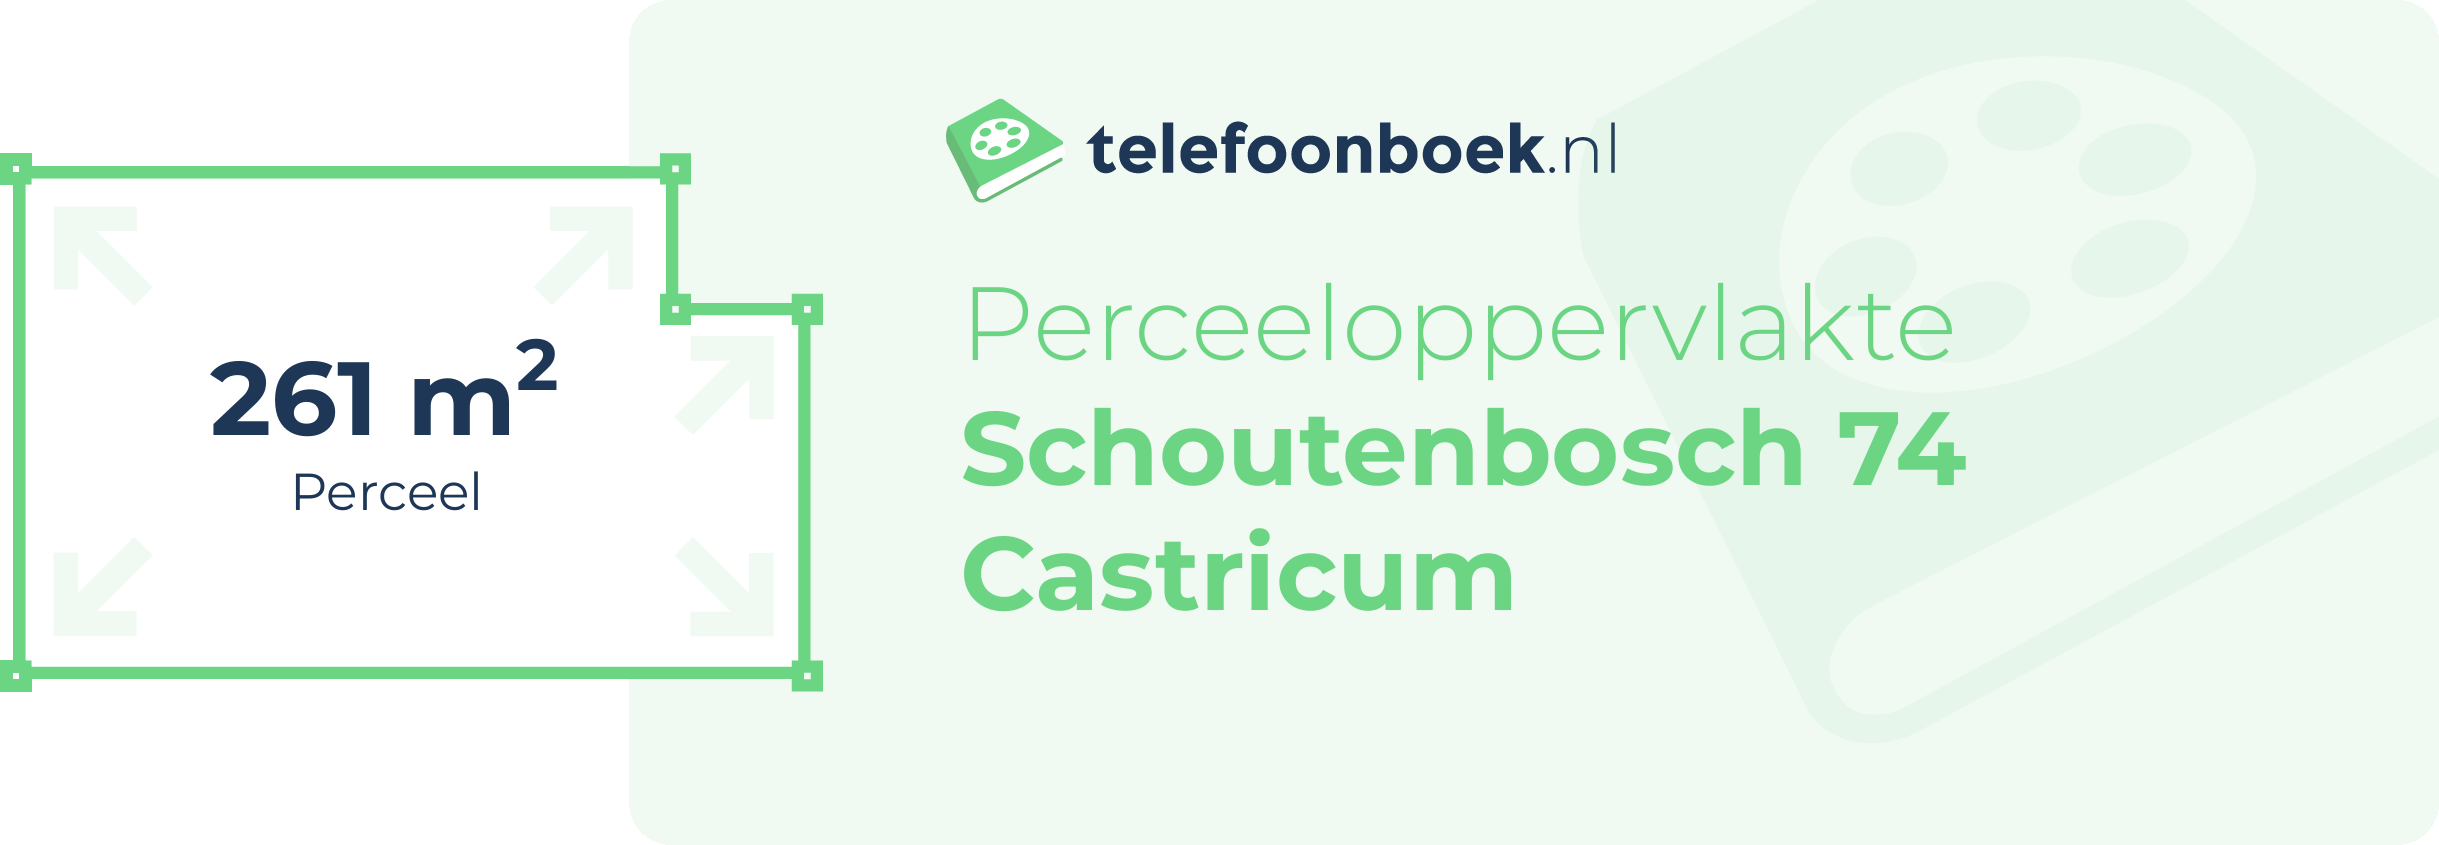 Perceeloppervlakte Schoutenbosch 74 Castricum